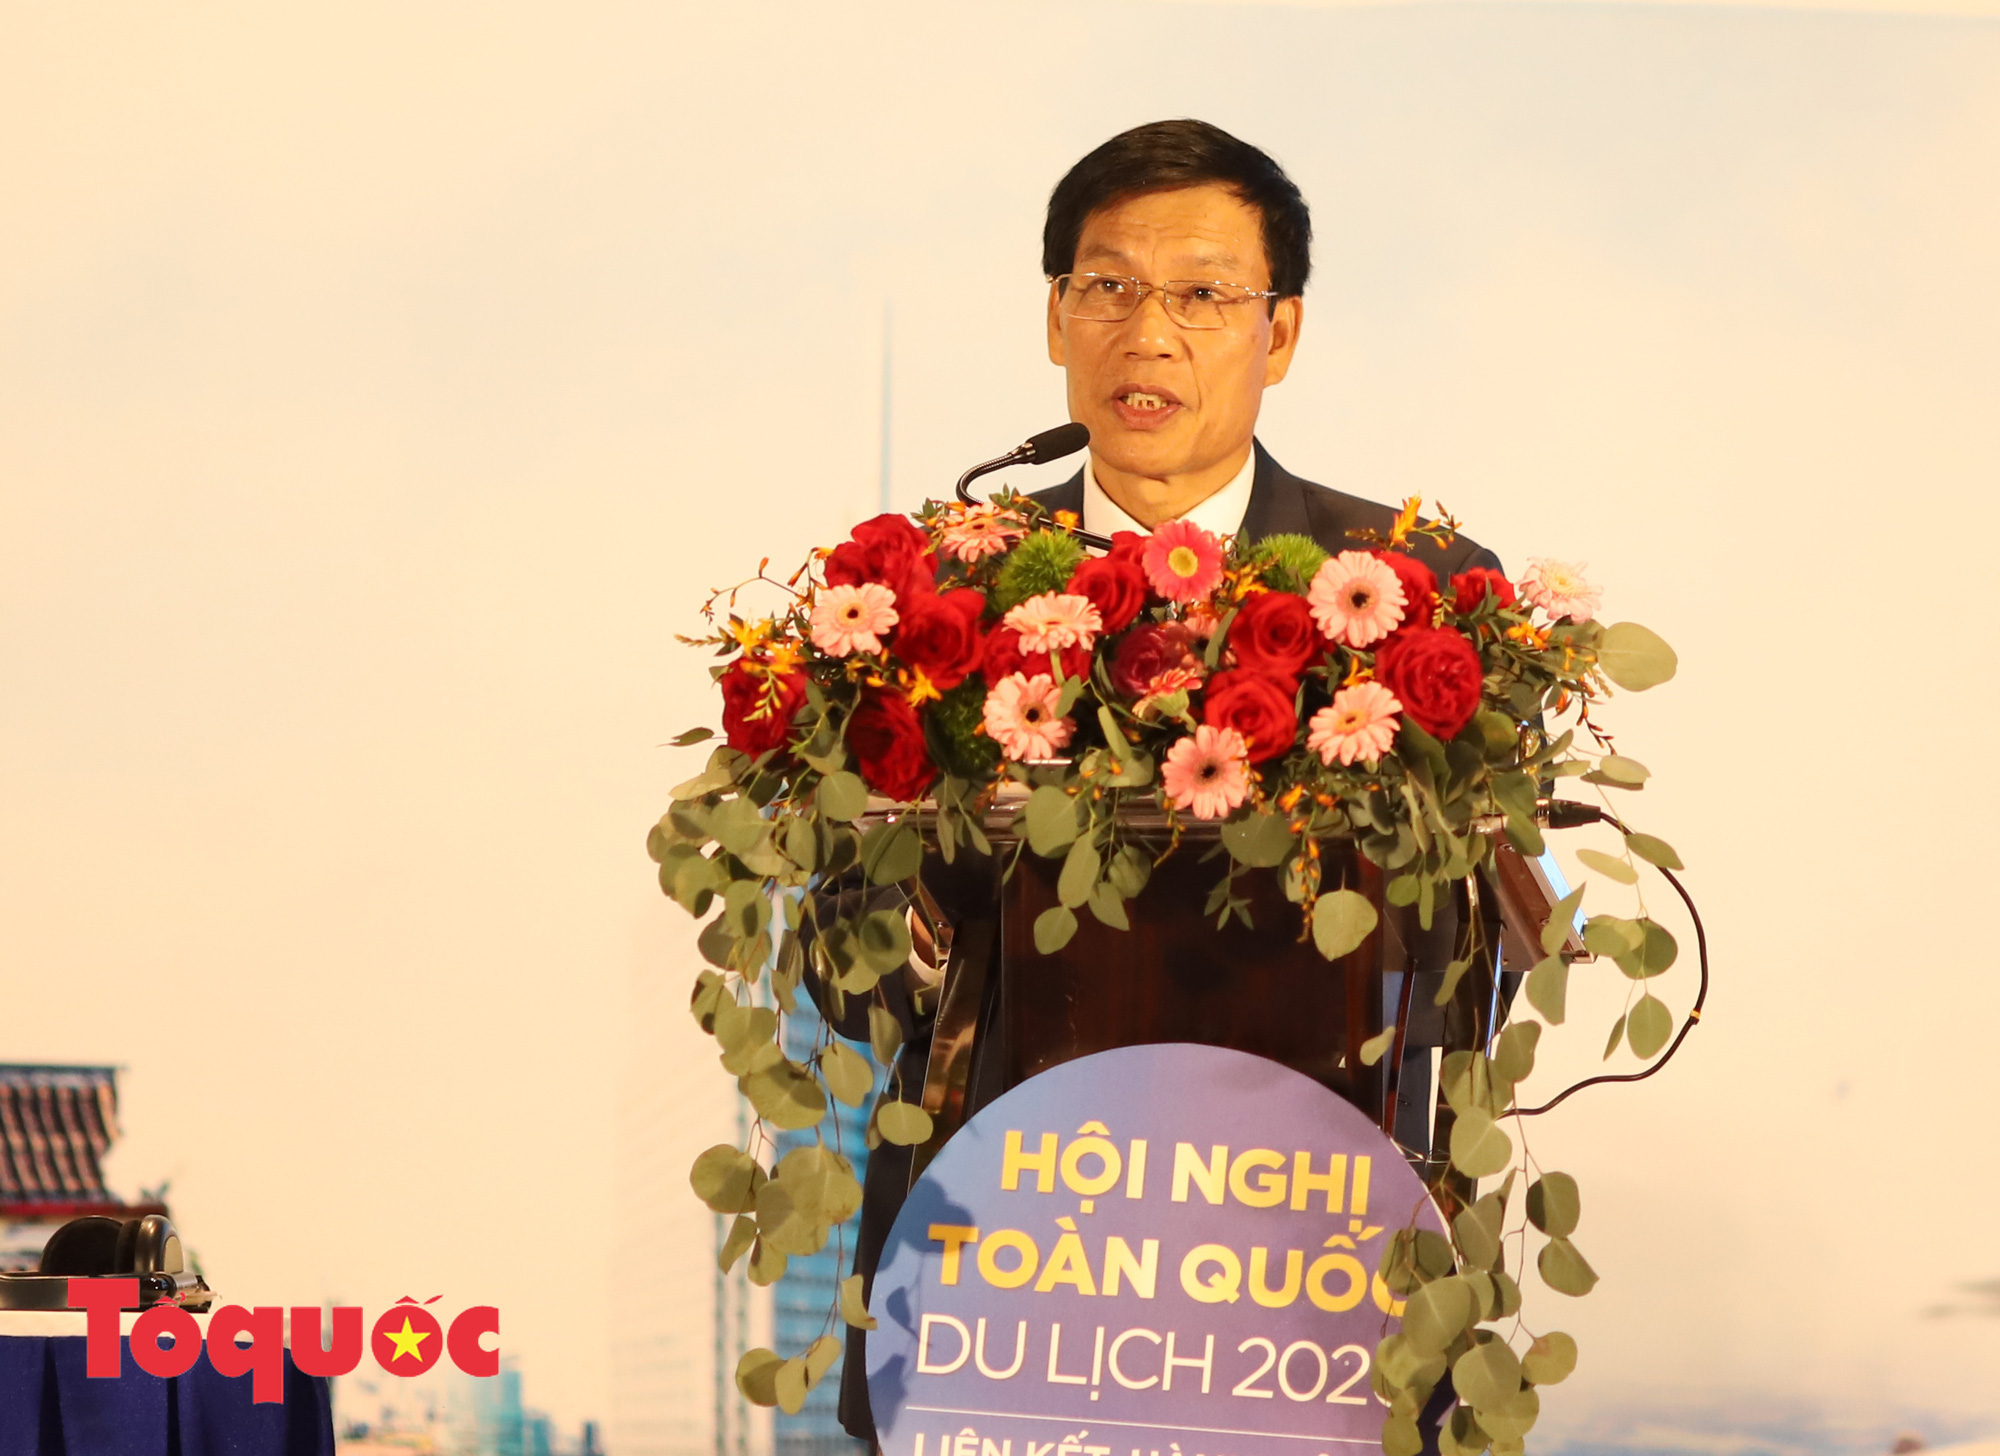 Bộ trưởng Nguyễn Ngọc Thiện: “Vừa an toàn phòng chống dịch vừa phát triển du lịch an toàn, hiệu quả” - Ảnh 3.